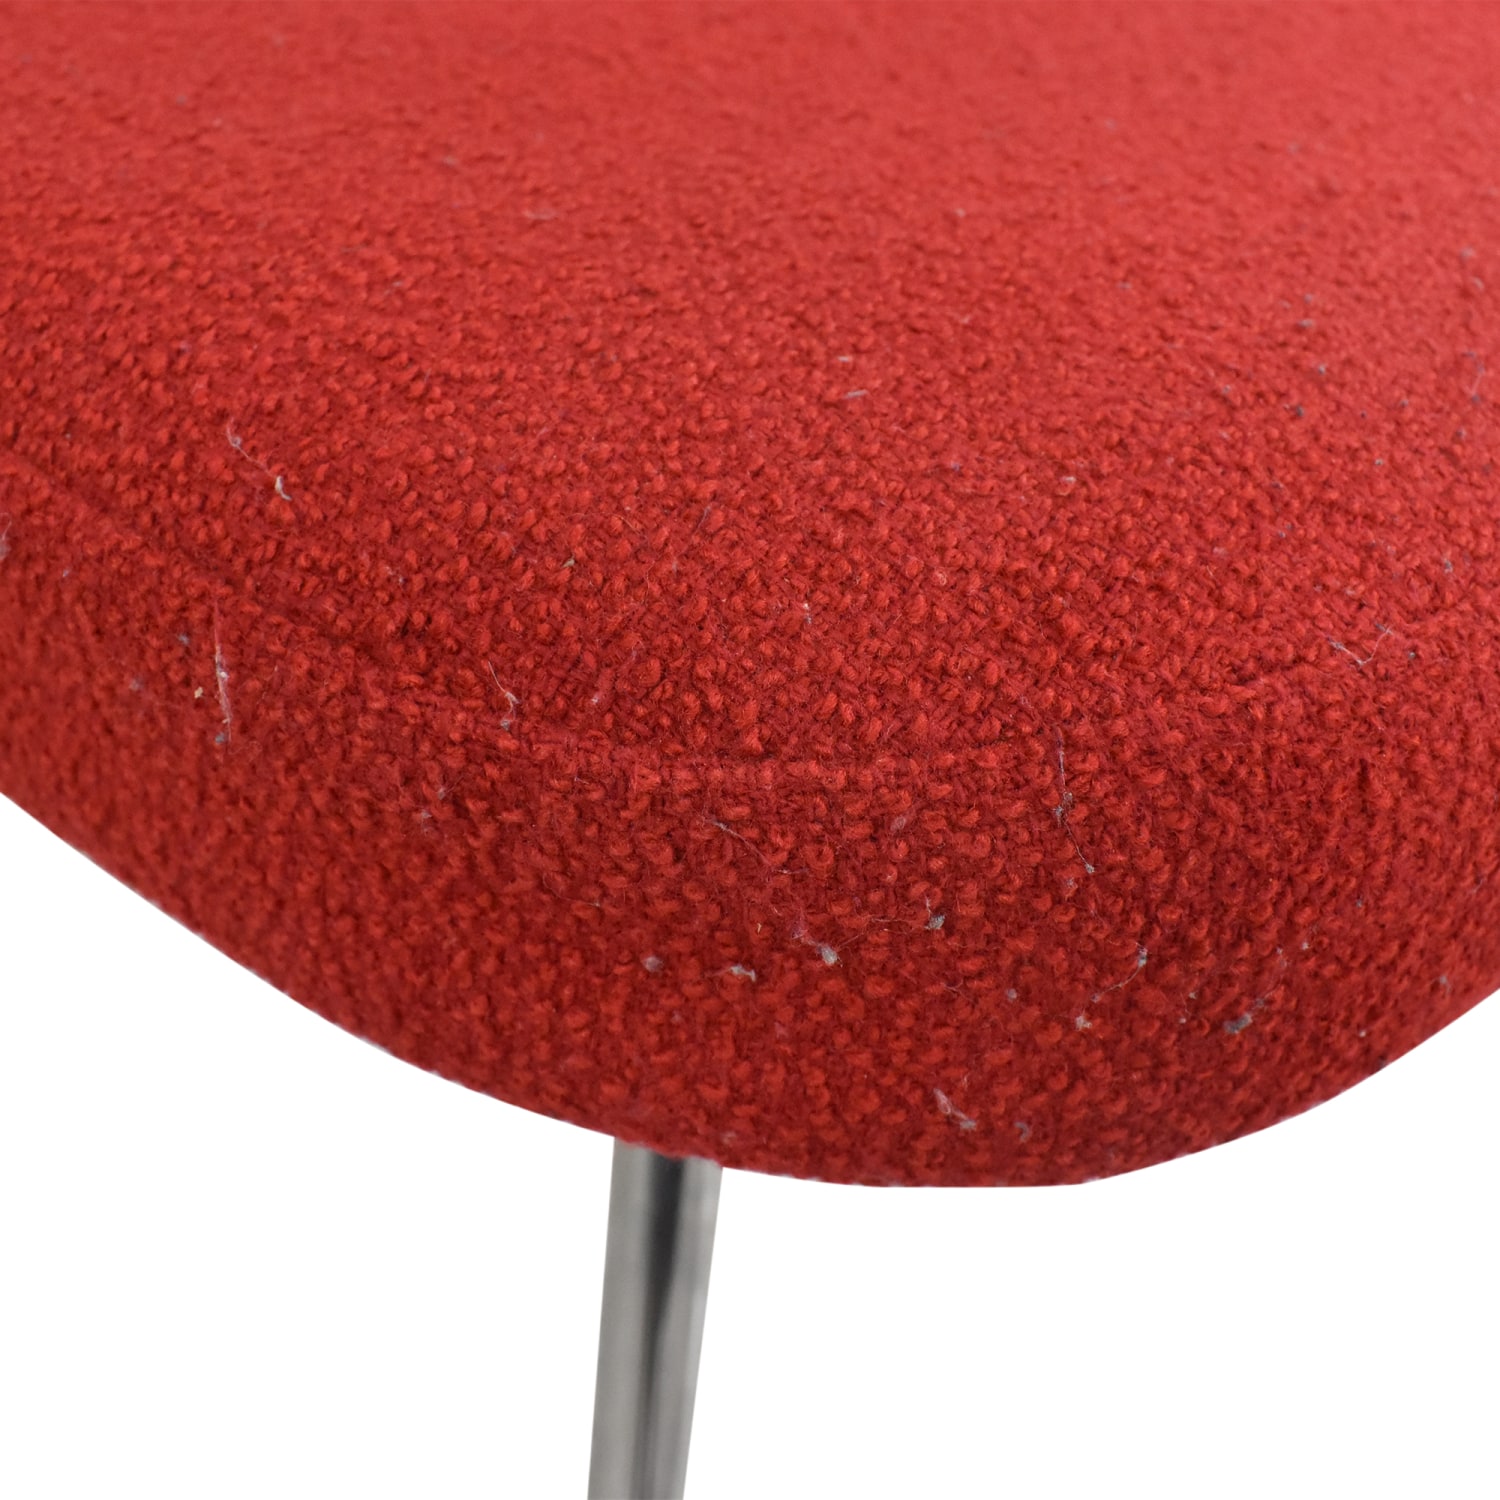 Knoll Saarinen Executive Armless Chair / Chairs